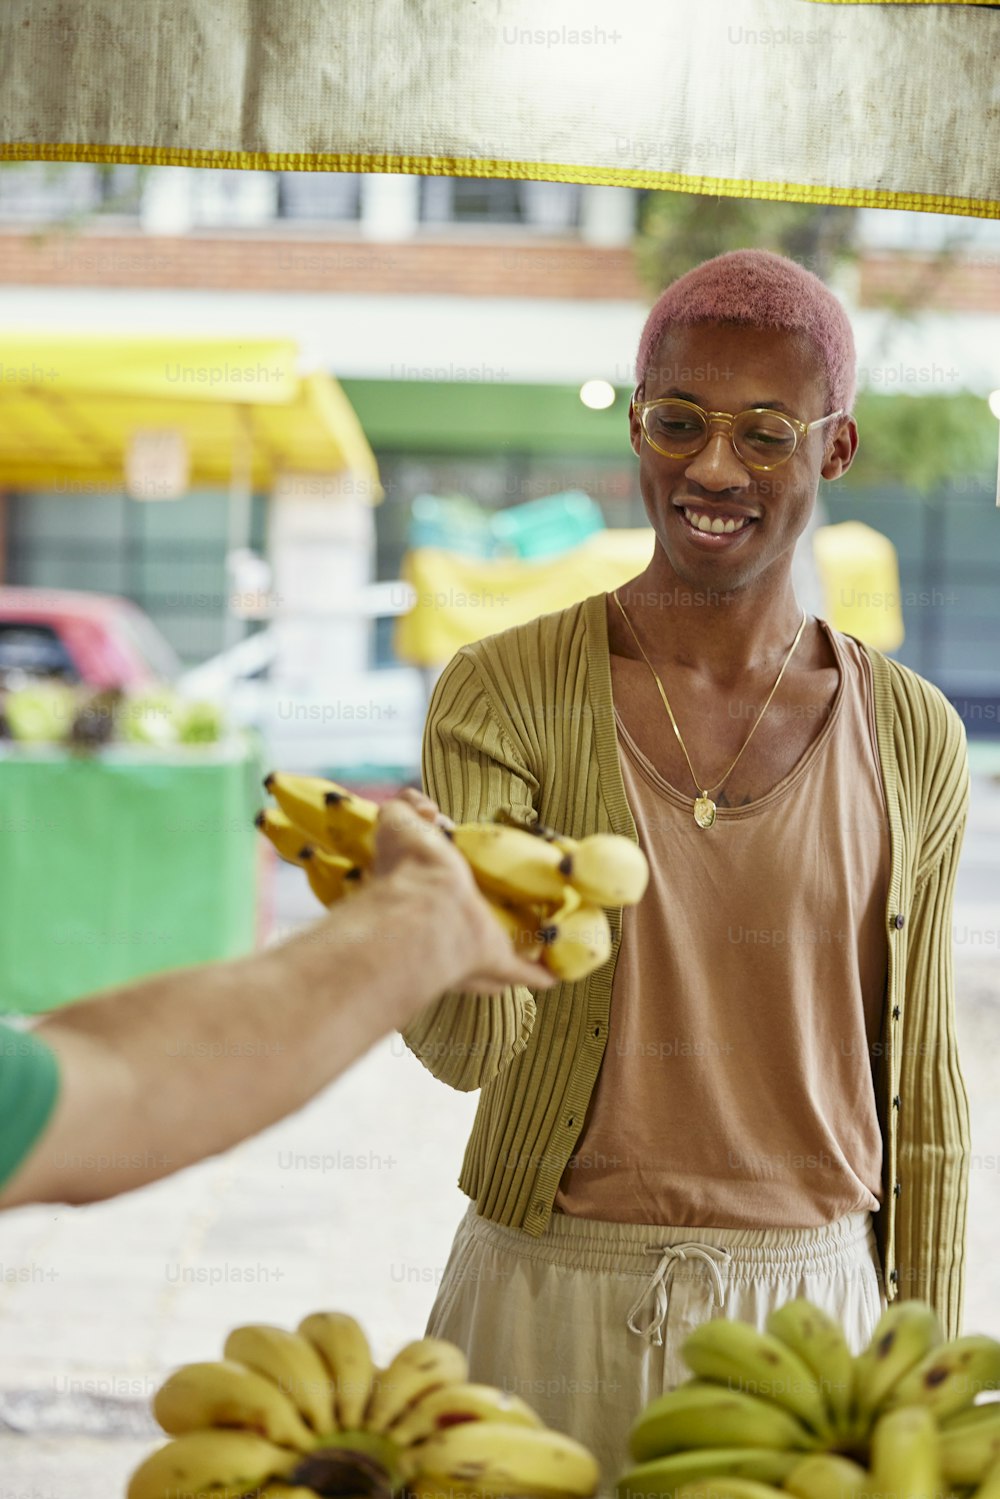 Un hombre sosteniendo un manojo de plátanos junto a otro hombre